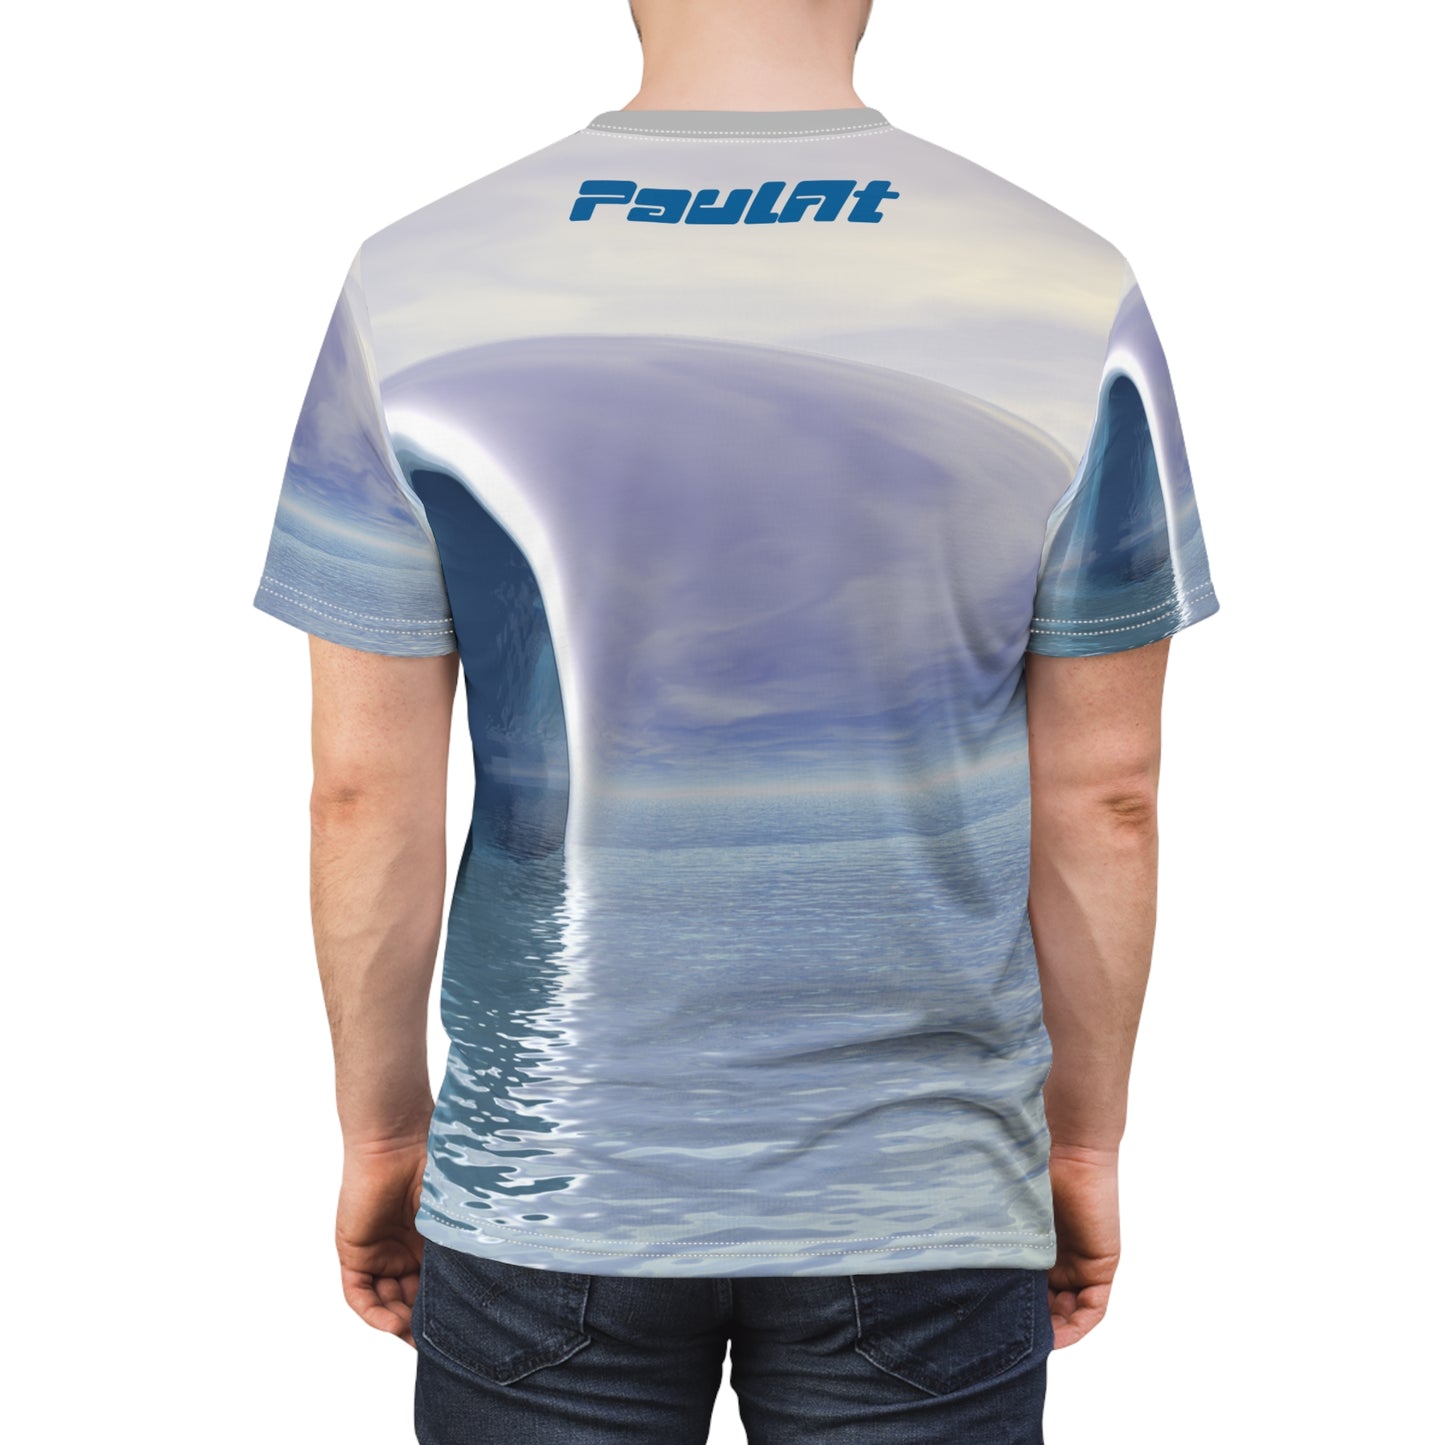 Brushed Pewter Unisex T-Shirt